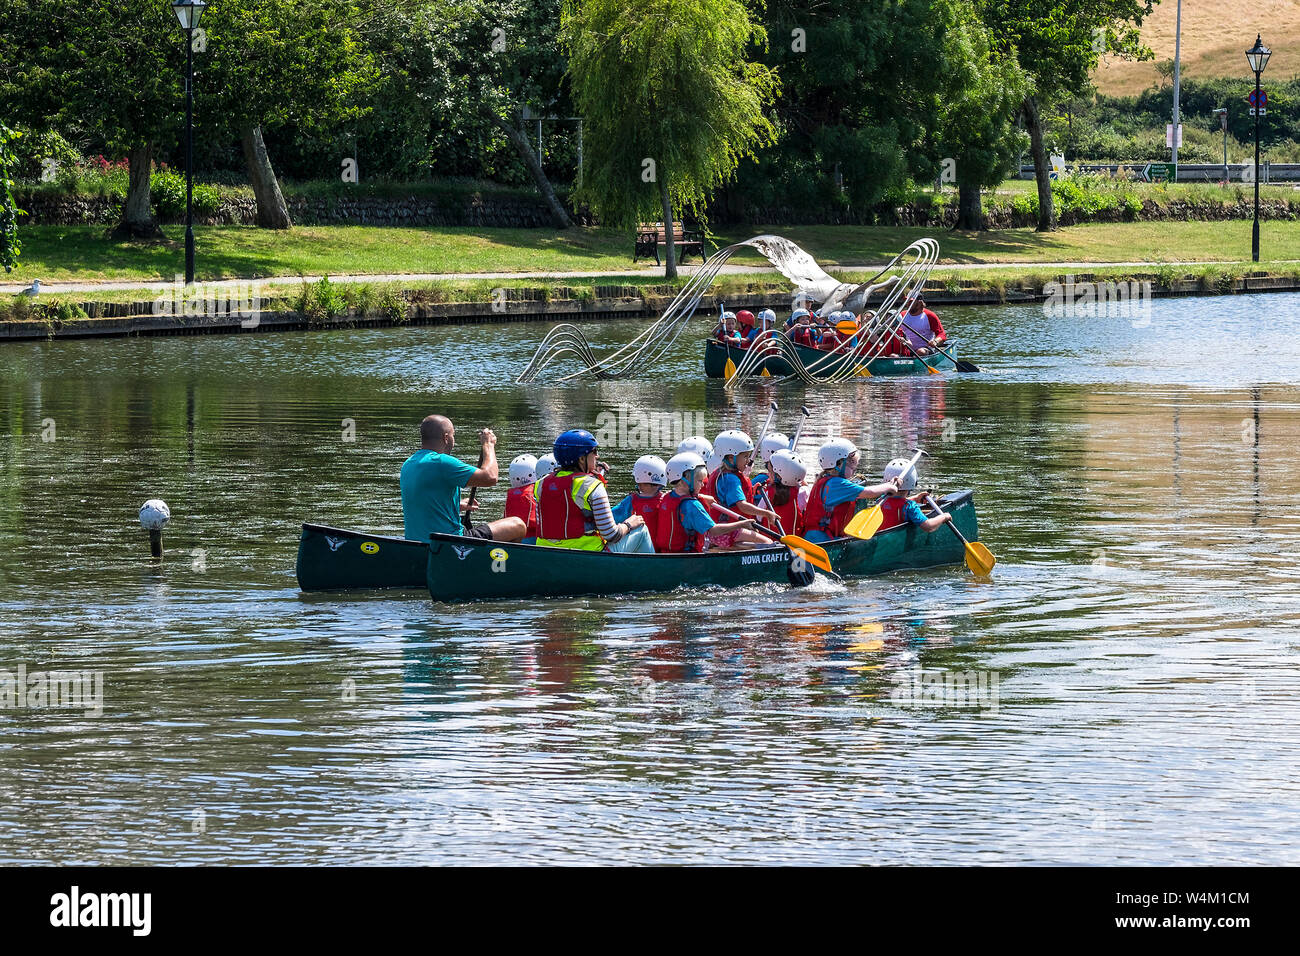 Les élèves de l'école primaire bénéficiant d'une activité de plein air comme leçon qu'ils ont plaisir à canot sur le lac de plaisance Jardin Trenance à Newquay en Cornouailles. Banque D'Images